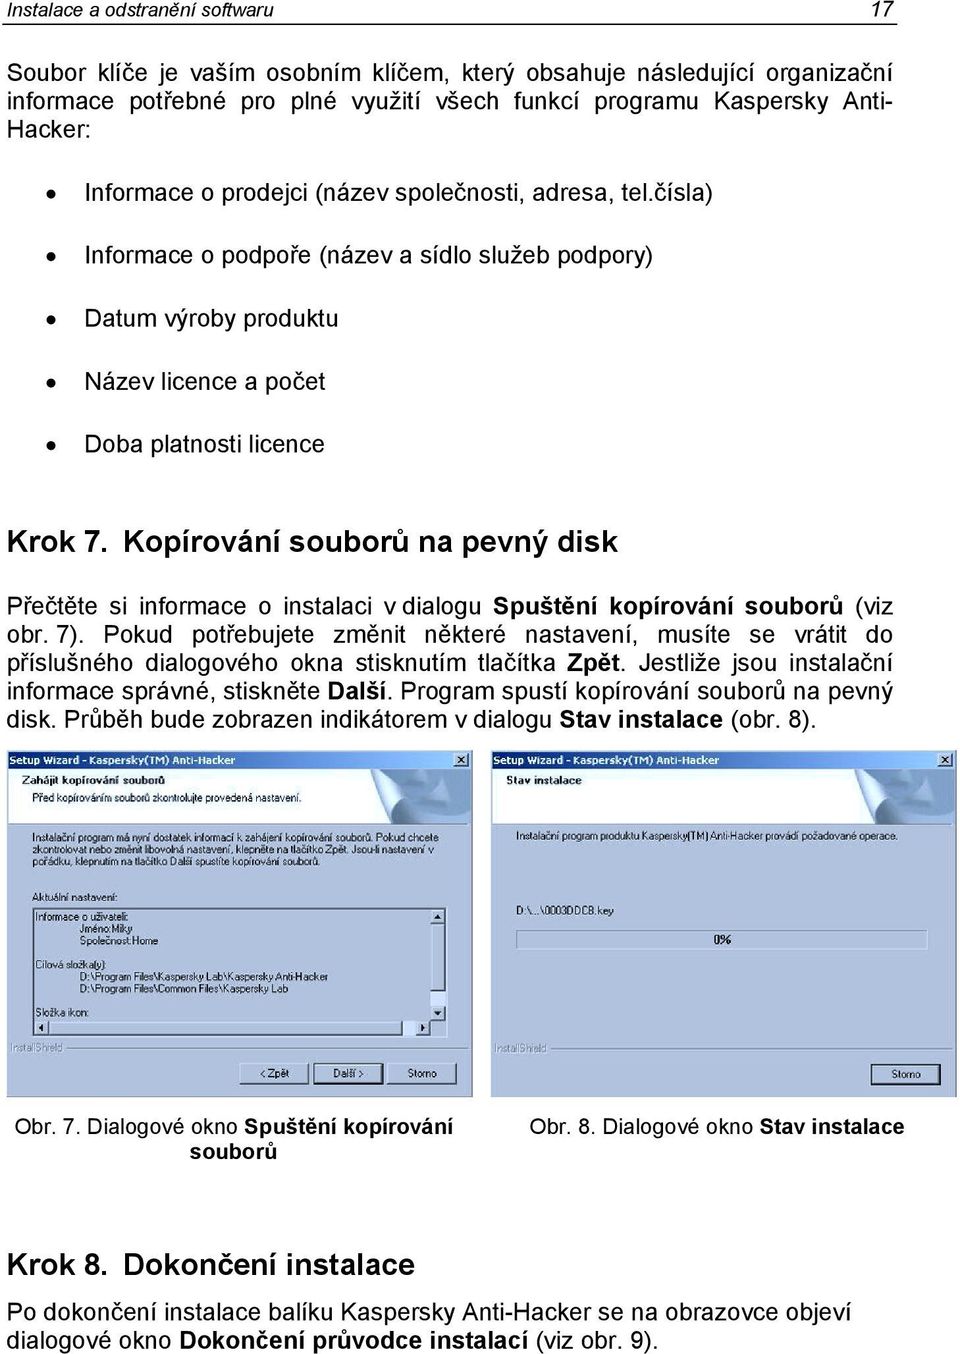 Kopírování souborů na pevný disk Přečtěte si informace o instalaci v dialogu Spuštění kopírování souborů (viz obr. 7).